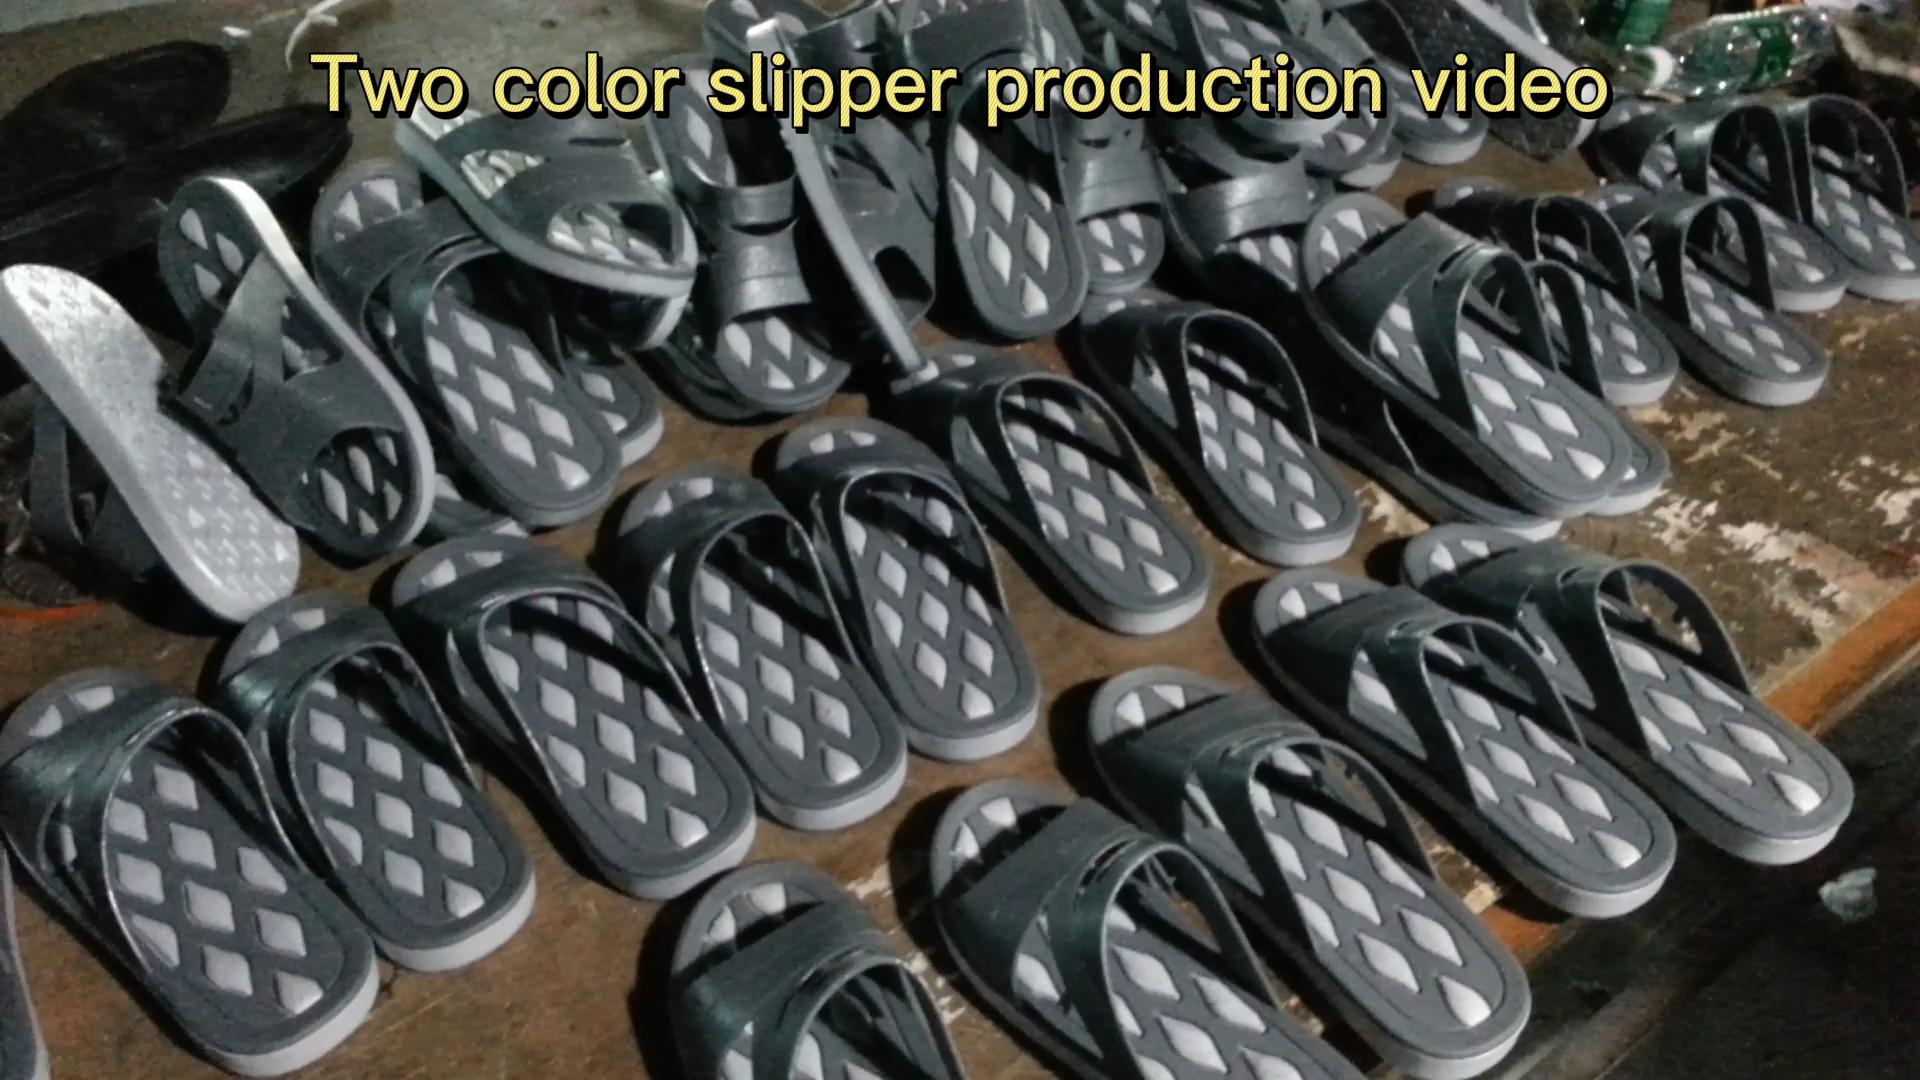 Video de producción de zapatillas de dos colores.